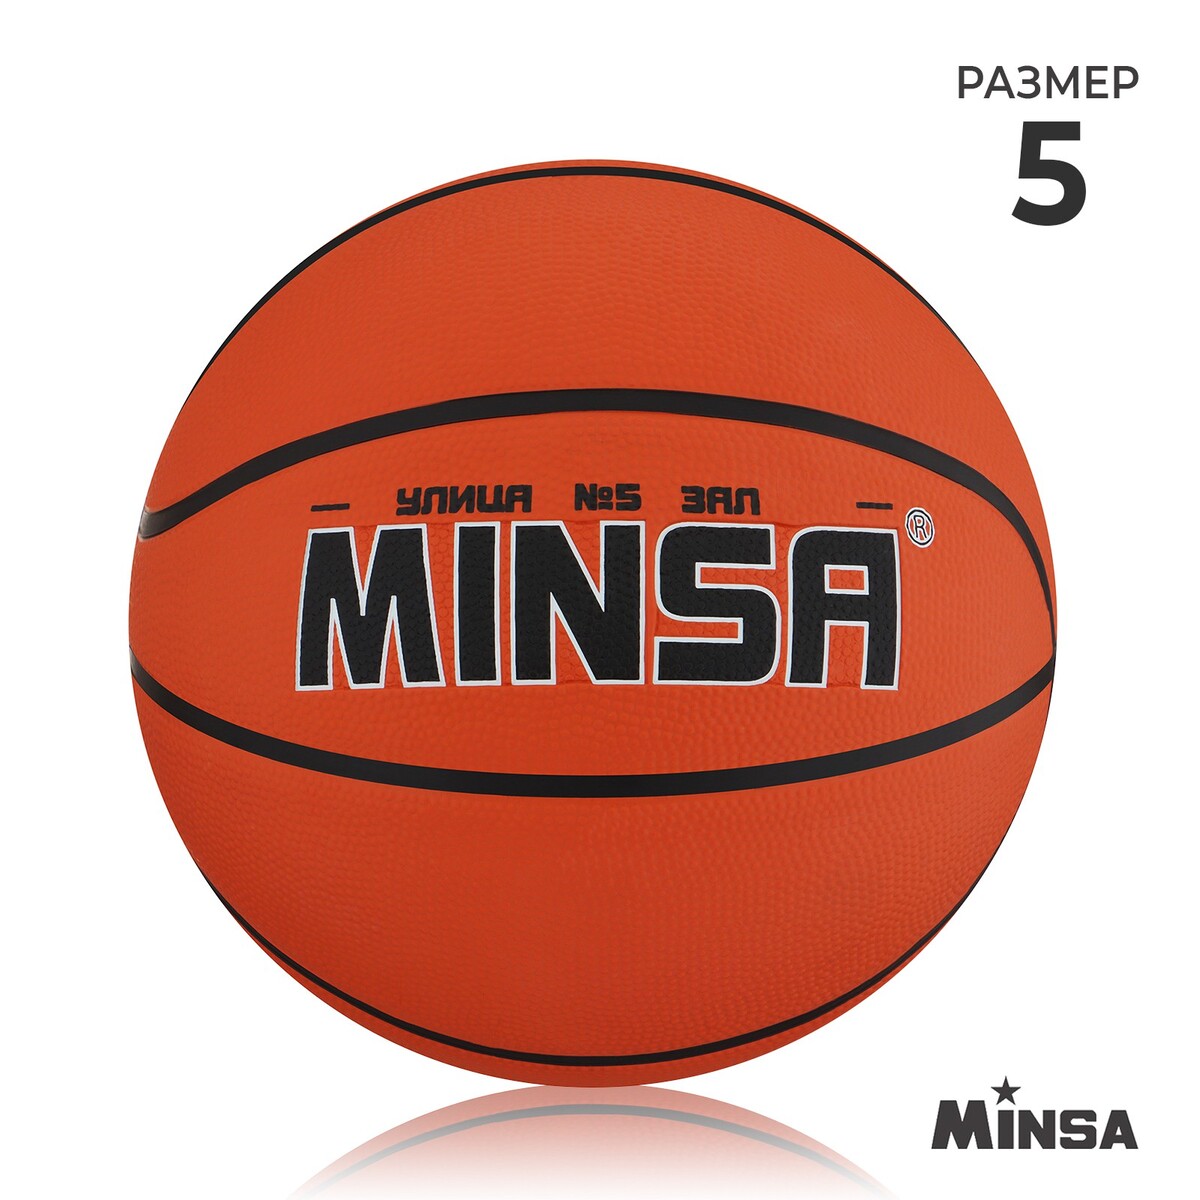 Мяч баскетбольный minsa, пвх, клееный, 8 панелей, р. 5 баскетбольный мяч разм 7 spalding excel tf500 77 204z